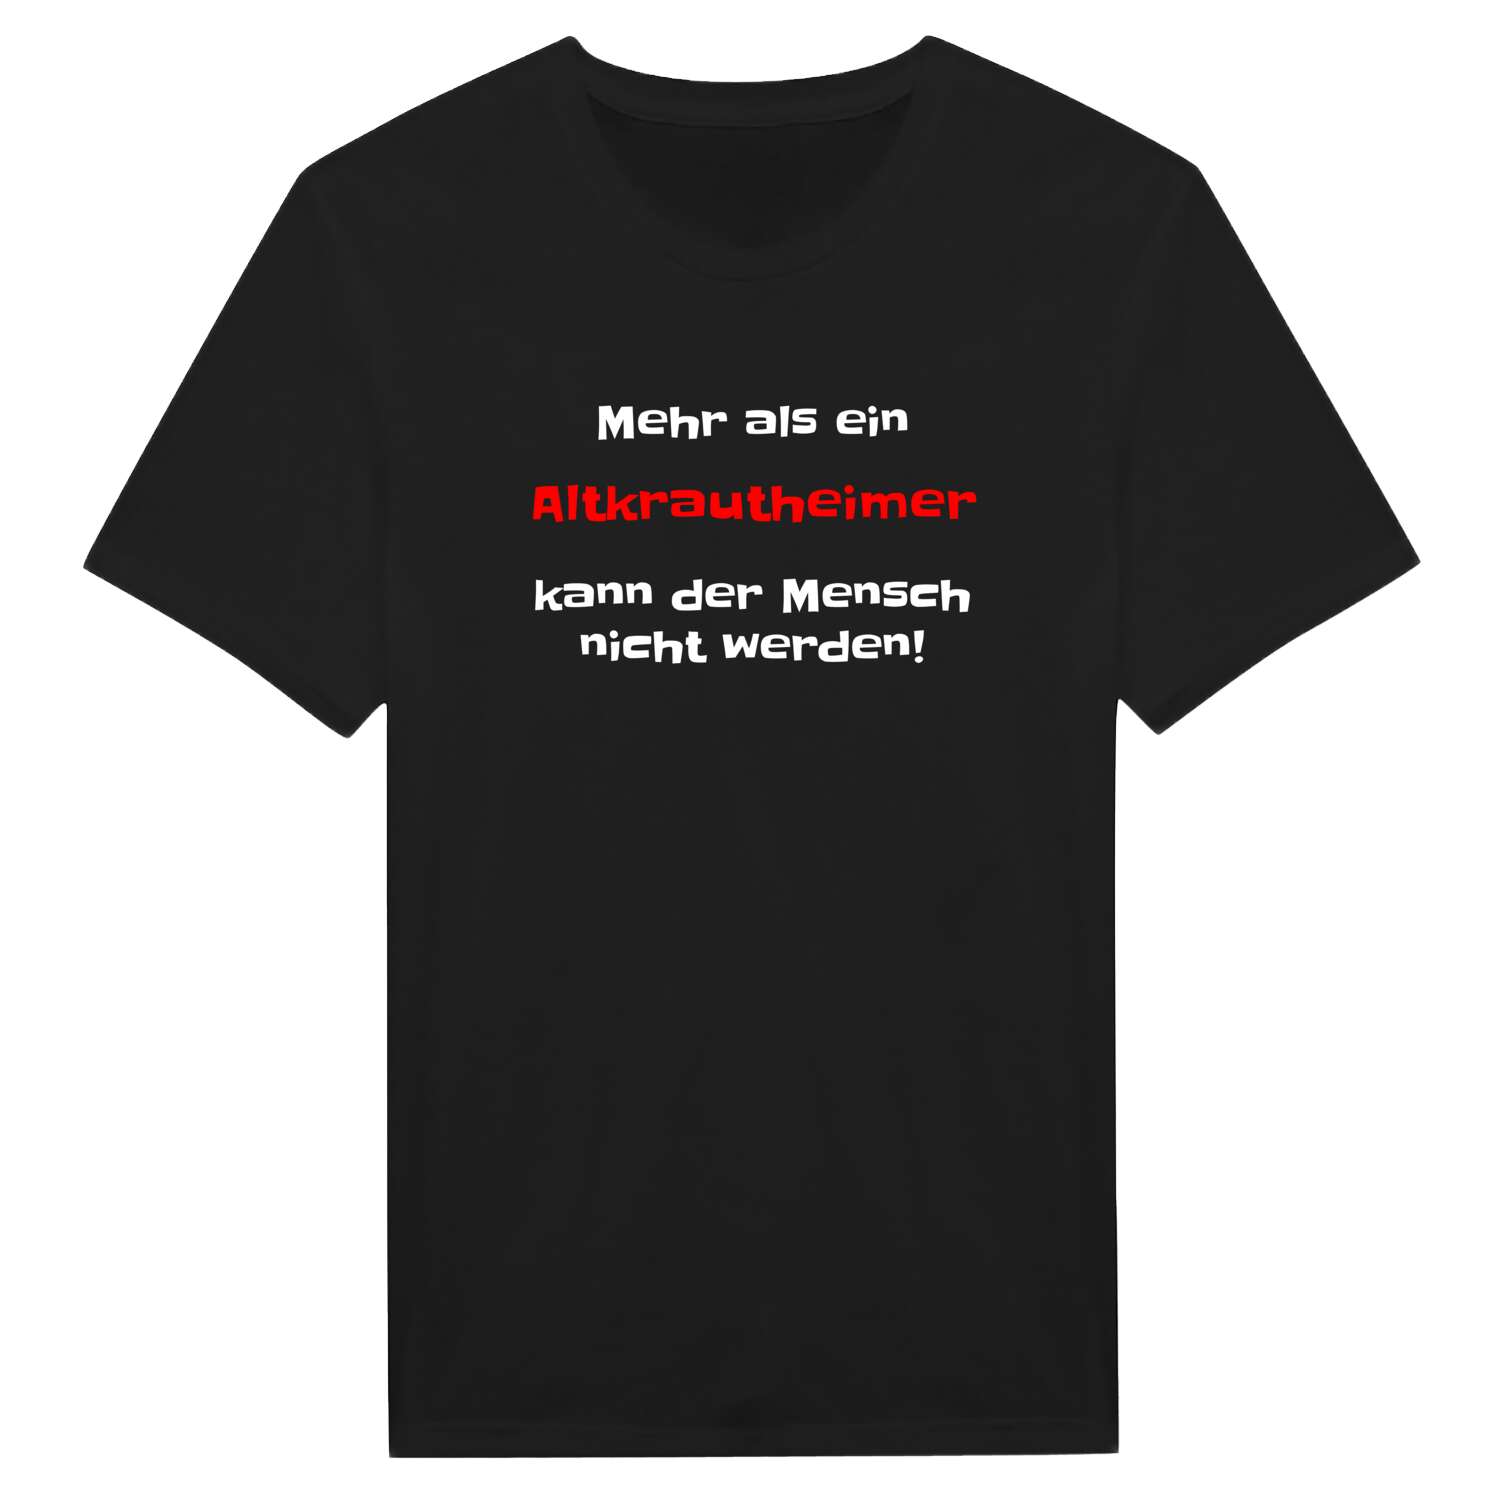 Altkrautheim T-Shirt »Mehr als ein«